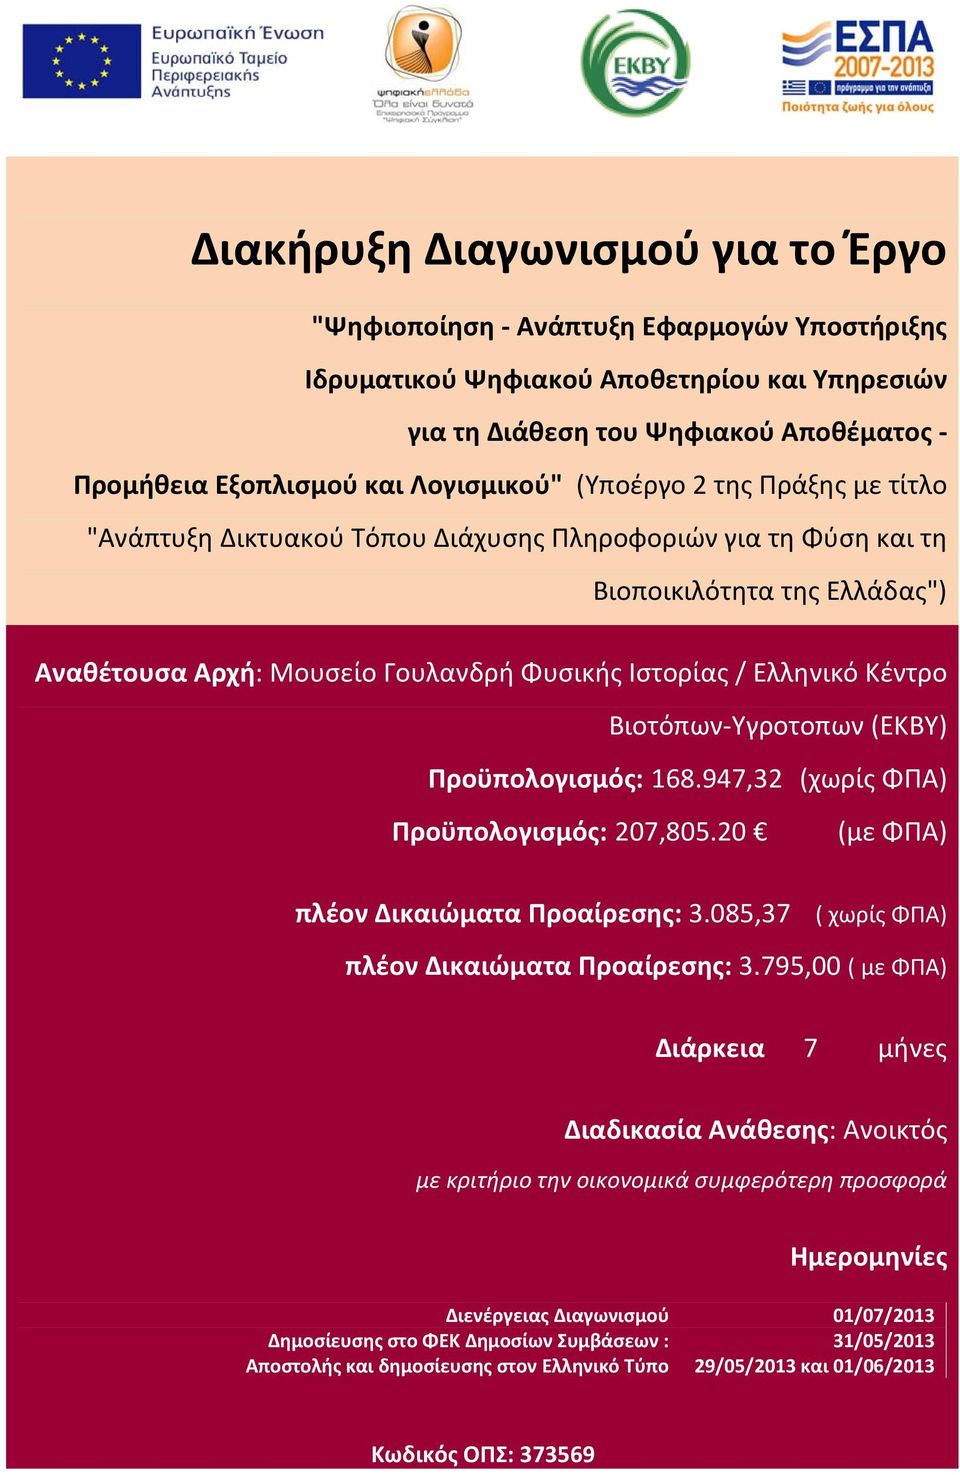 Ελληνικό Κέντρο Βιοτόπων Υγροτοπων () Προϋπολογισμός: 168.947,32 (χωρίς ΦΠΑ) Προϋπολογισμός: 207,805.20 (με ΦΠΑ) πλέον Δικαιώματα Προαίρεσης: 3.085,37 ( χωρίς ΦΠΑ) πλέον Δικαιώματα Προαίρεσης: 3.